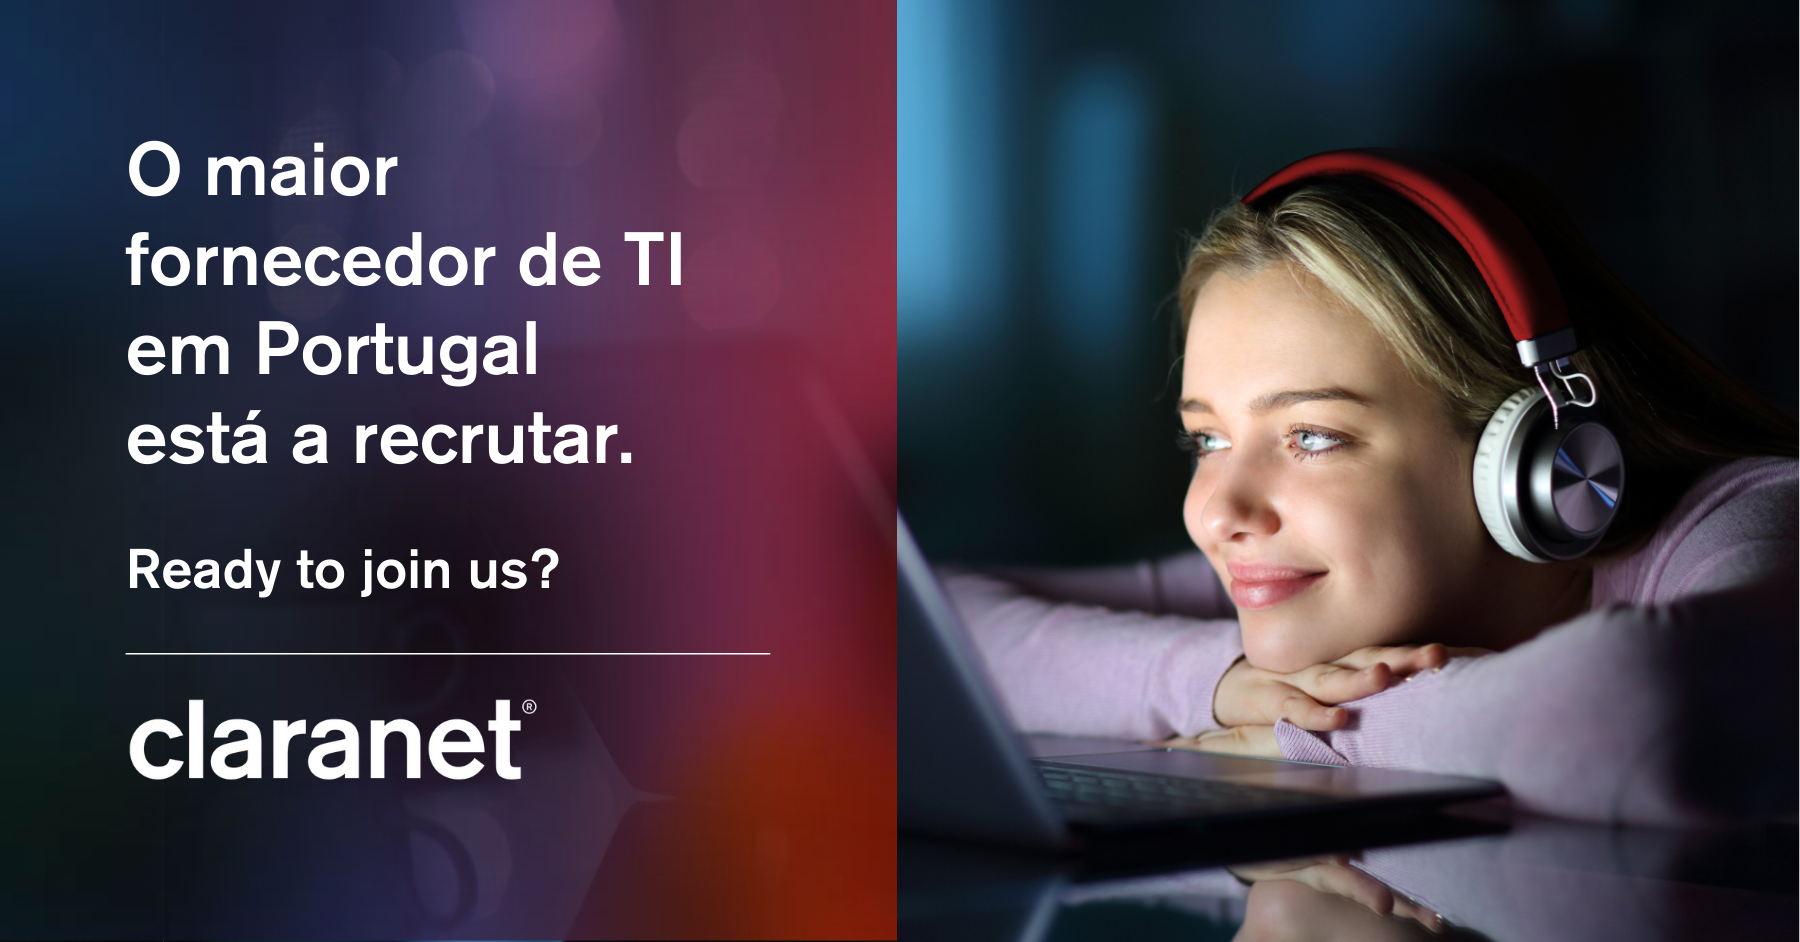 O maior fornecedor de TI em Portugal está a recrutar.